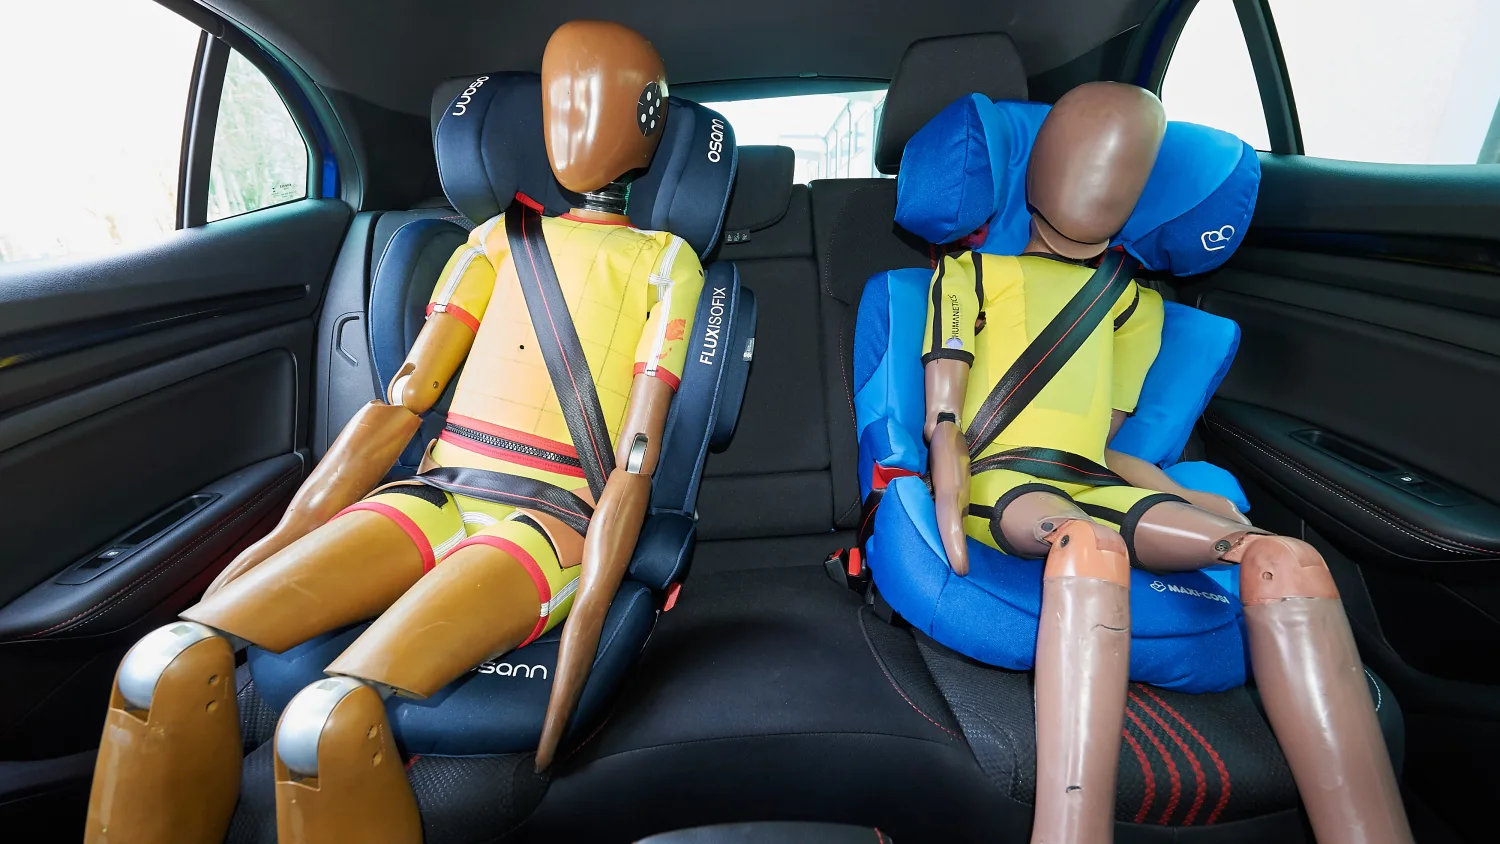 Anschnallen für die Kleinsten: Ratgeber: Kindersicherheit im Auto